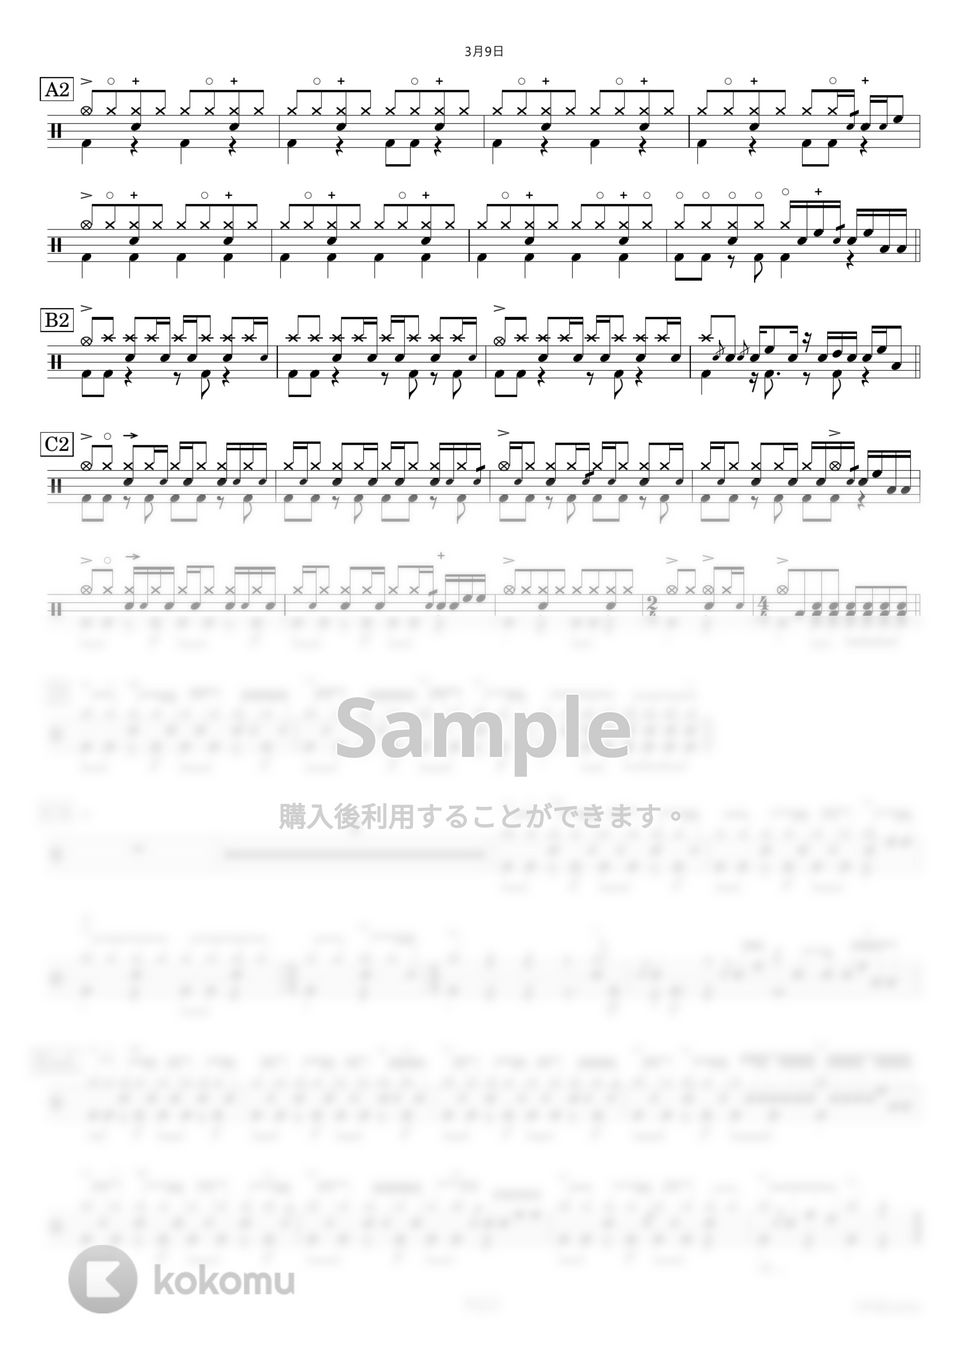 レミオロメン - 3月9日 【ドラム楽譜〔完コピ〕】.pdf by HYdrums